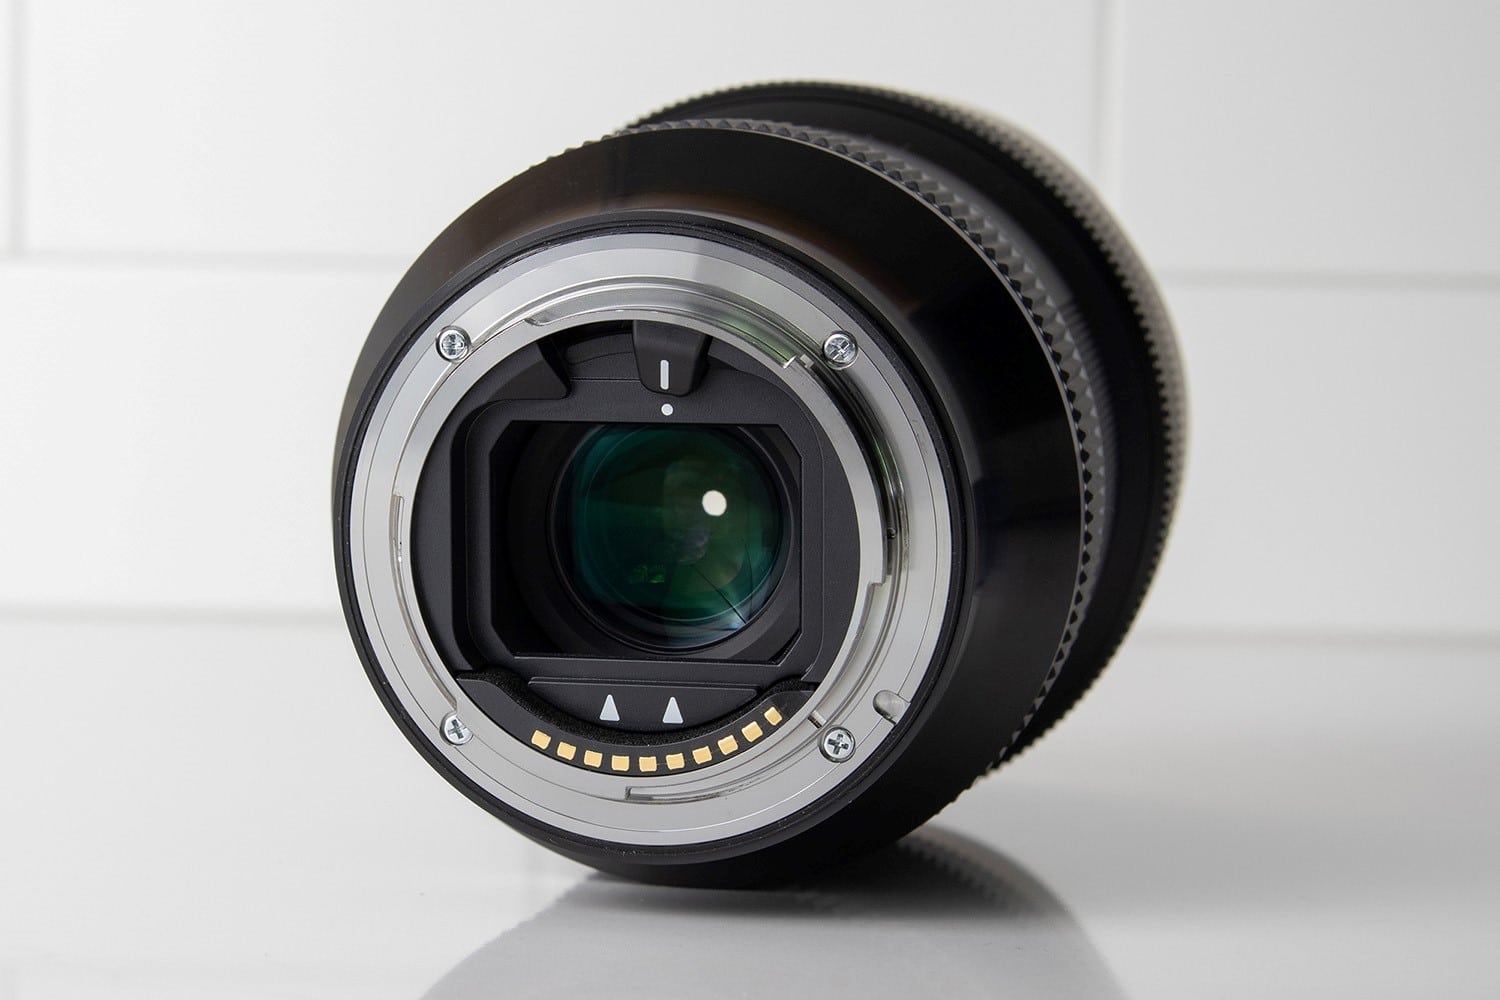 Ống kính Sigma 14-24mm F2.8 DG DN Art cho Sony E